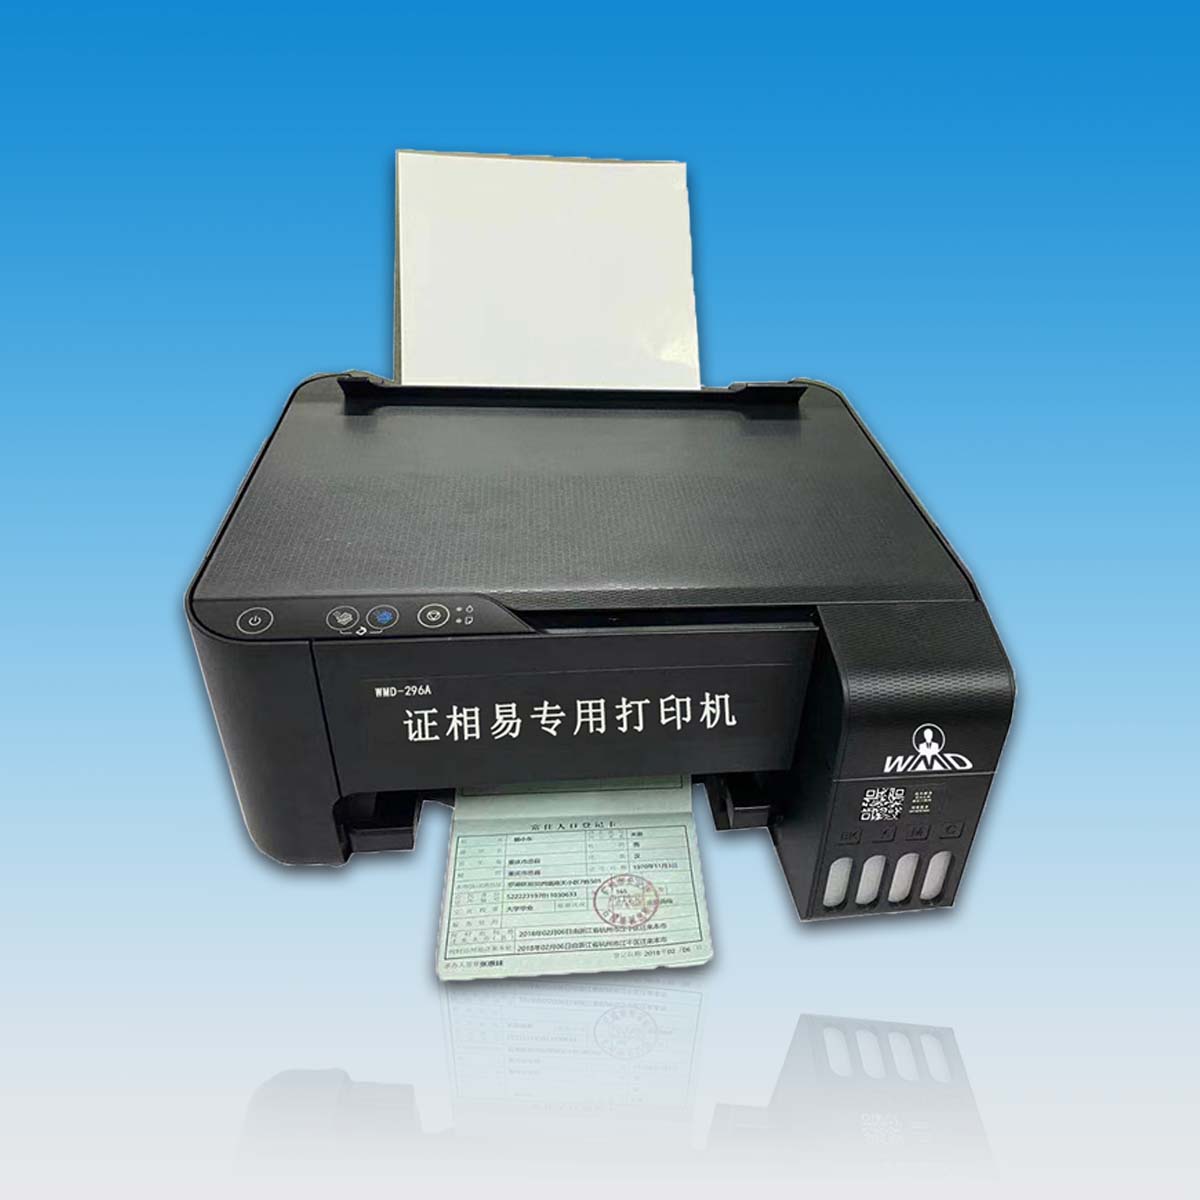 证相易户籍专业打印机 WMD-296A